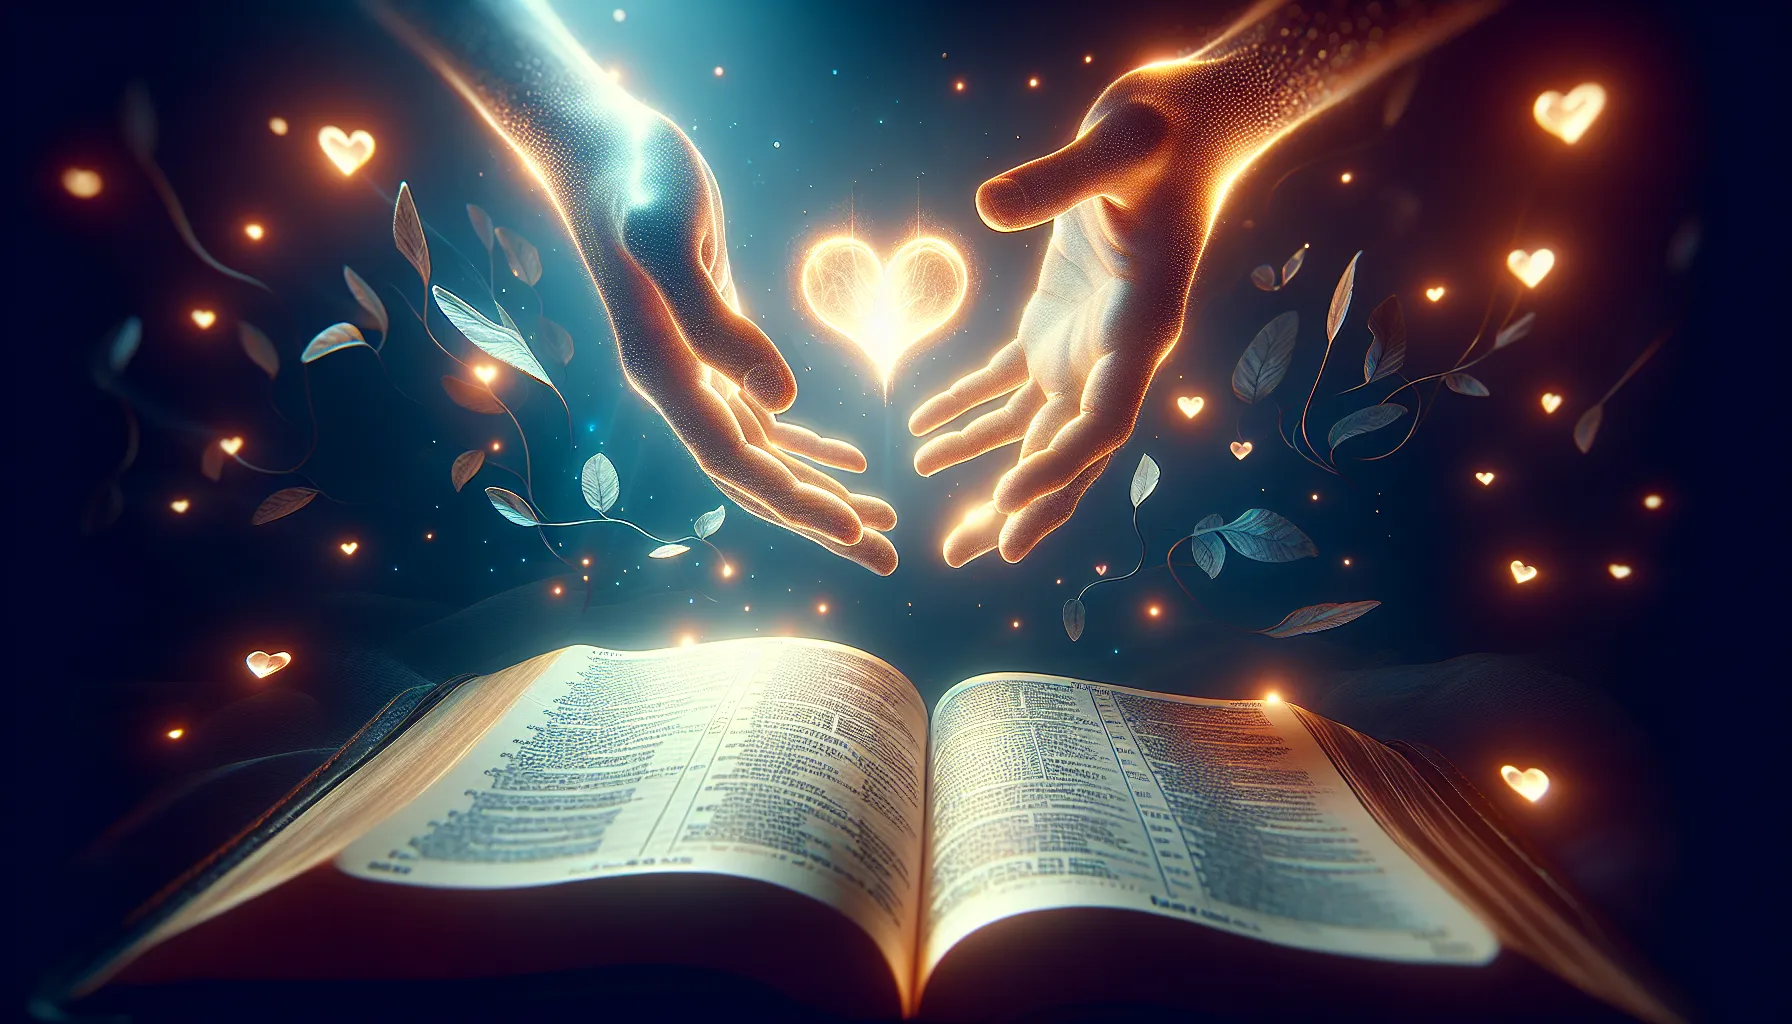 Imagen que representa el tema del artículo web: 'Conceptos bíblicos sobre los lazos del alma'.